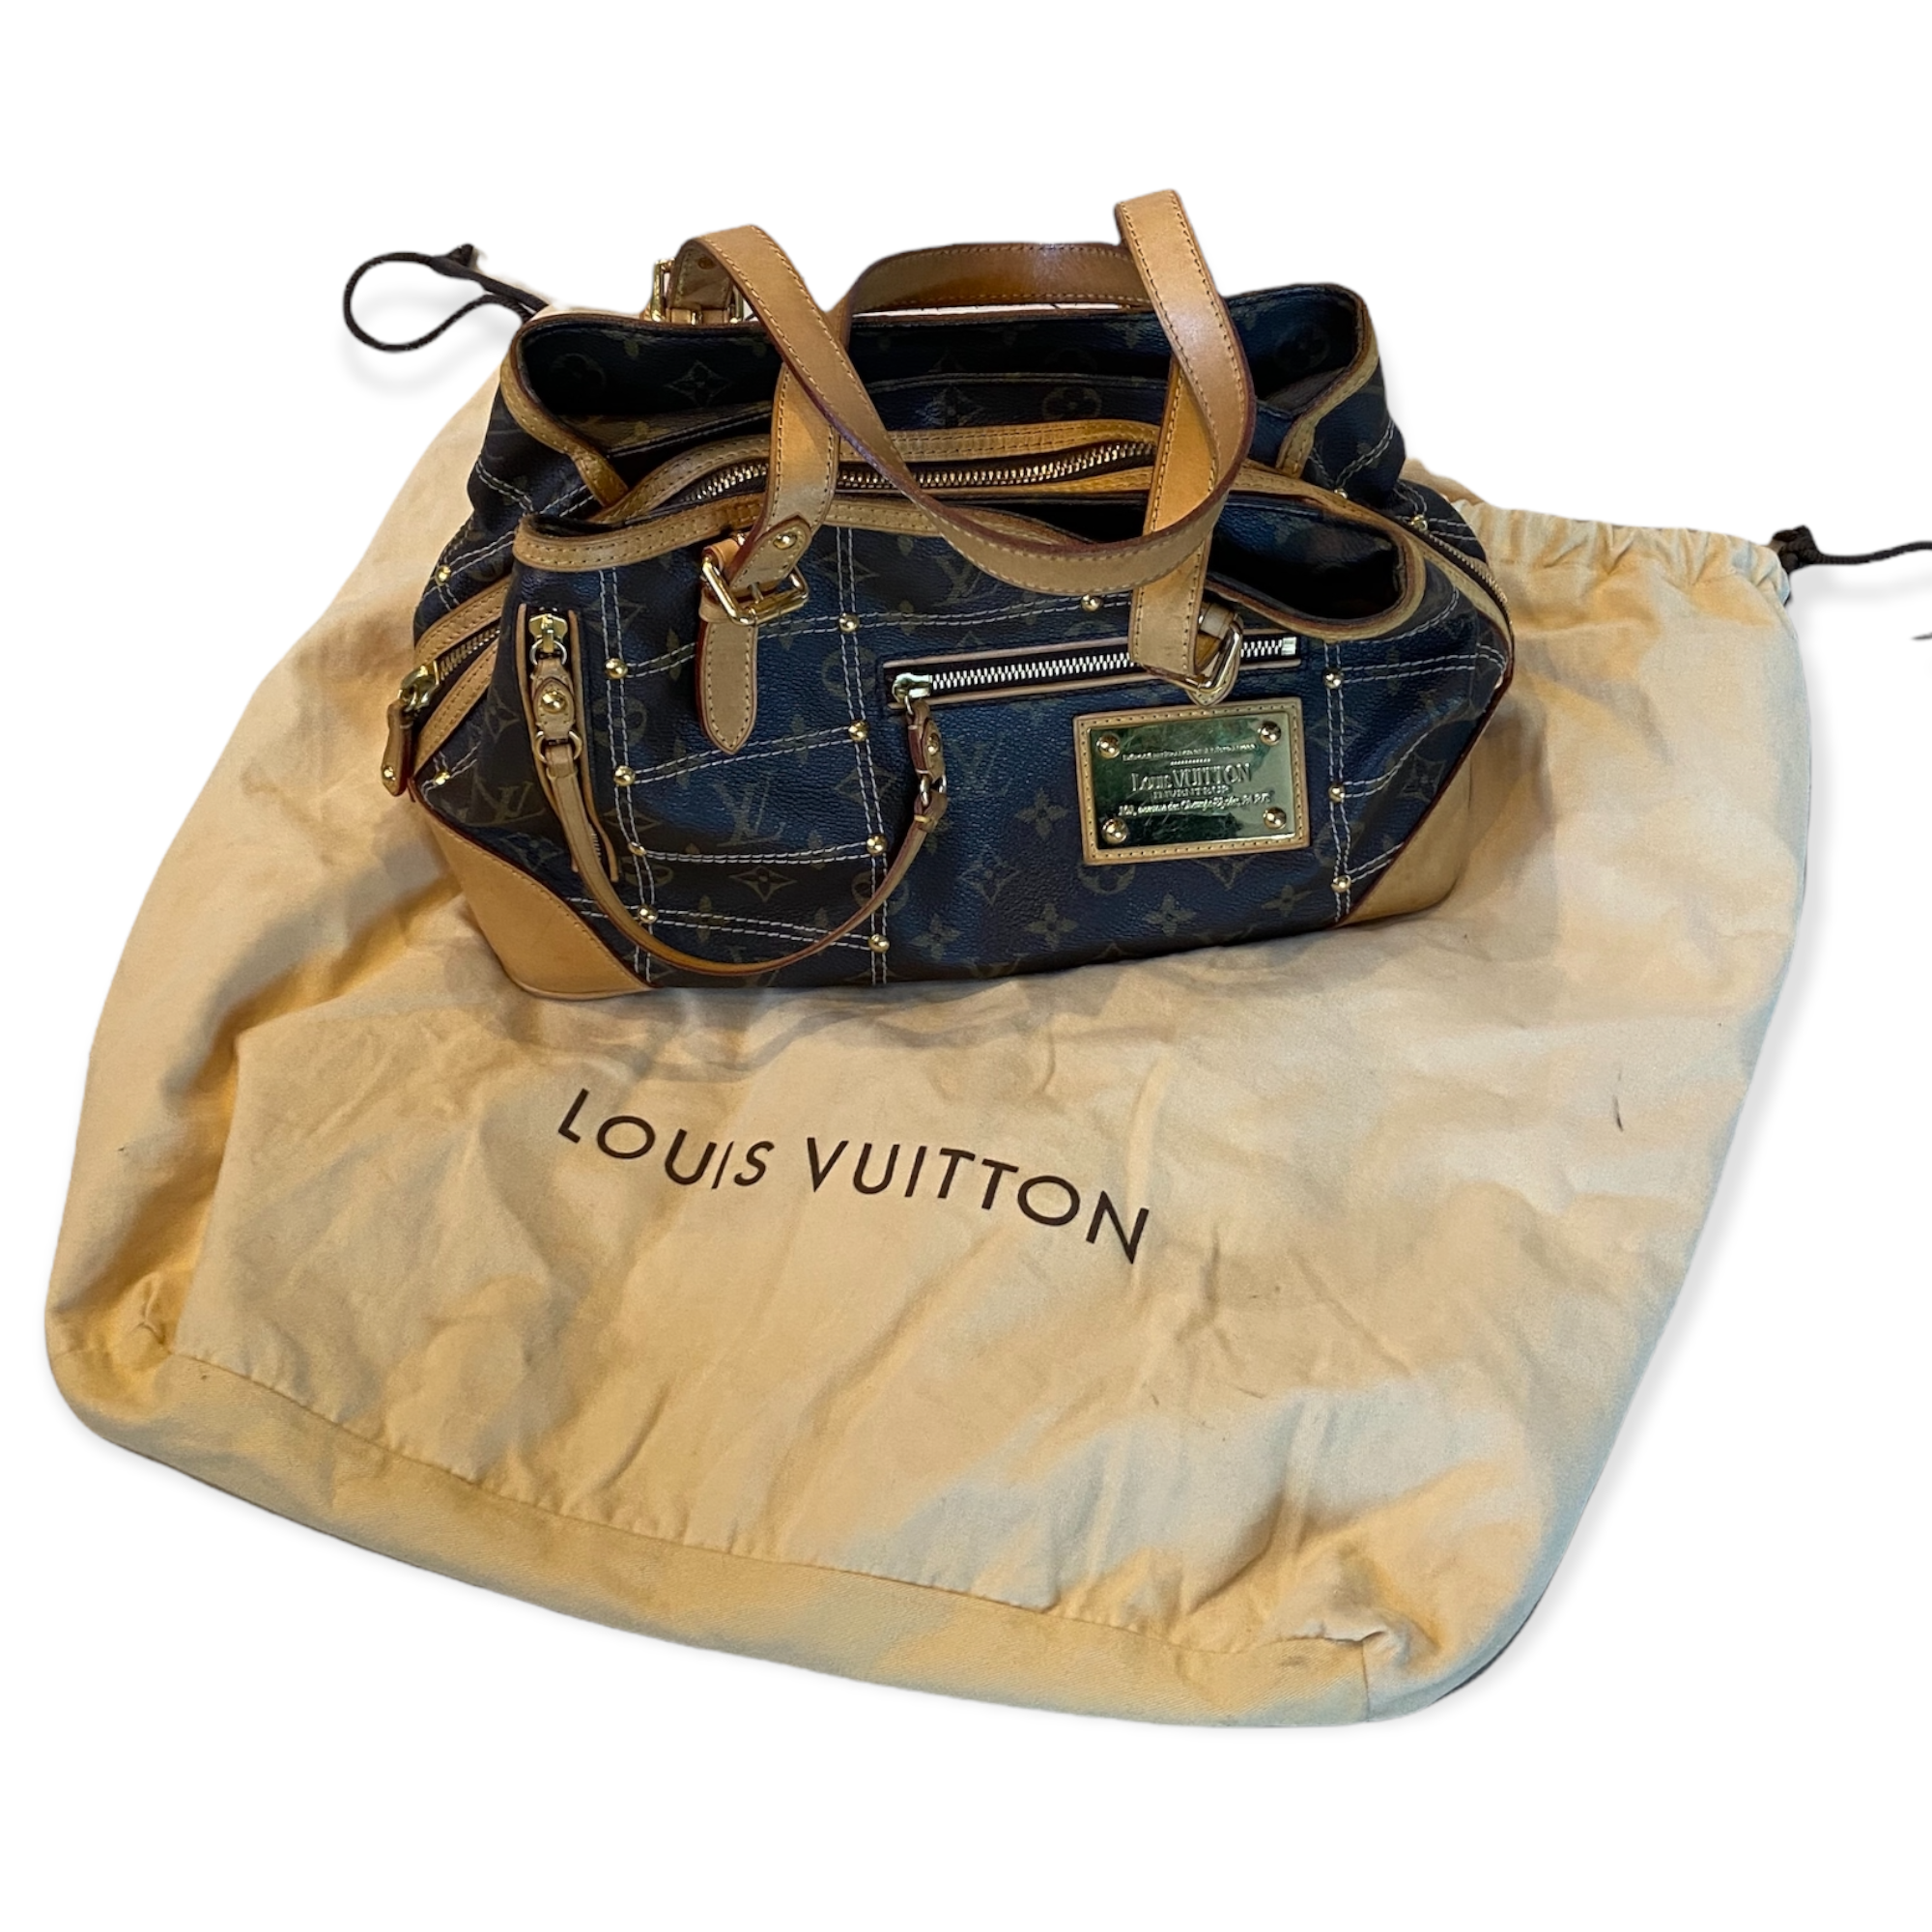 LOUIS VUITTON UNBOXING  NEW LOUIS VUITTON UNBOXING  SURPRISE Louis Vuitton  UNBOXING  LV BAGS  YouTube